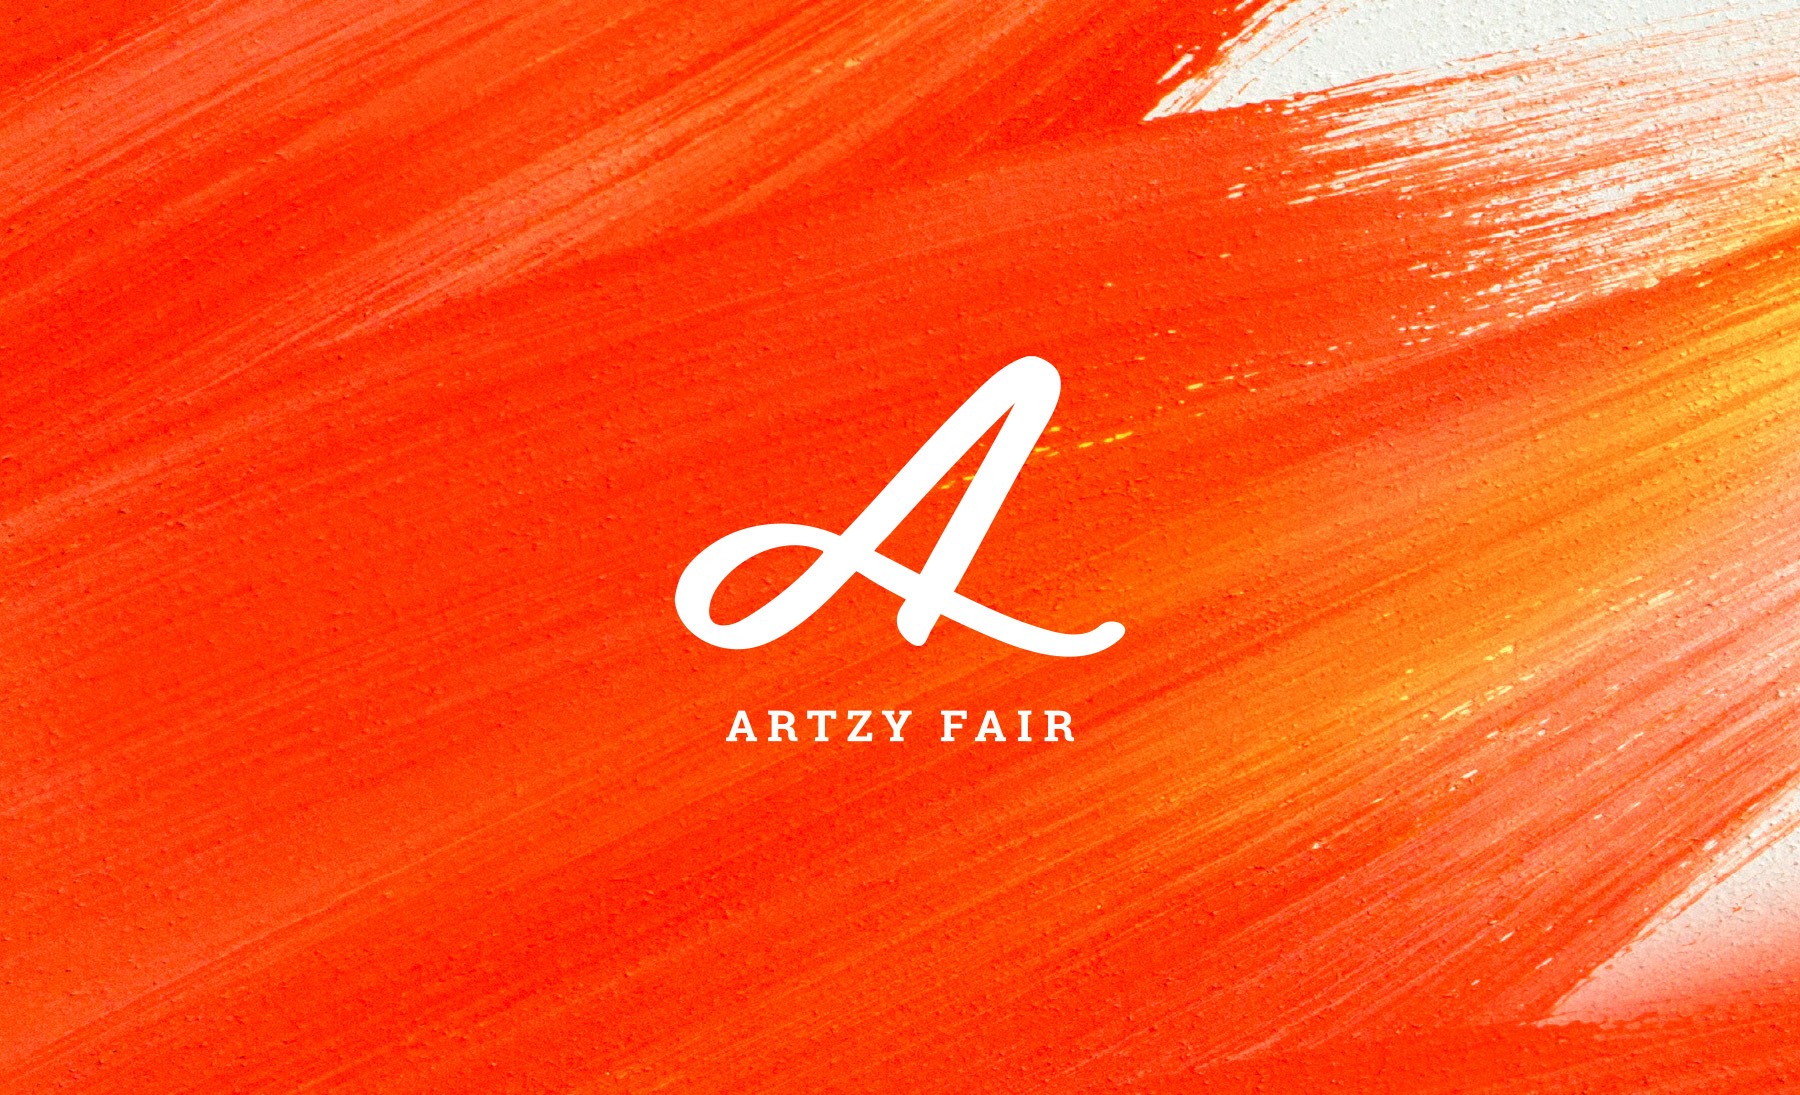 Artzy Fair crafting logo